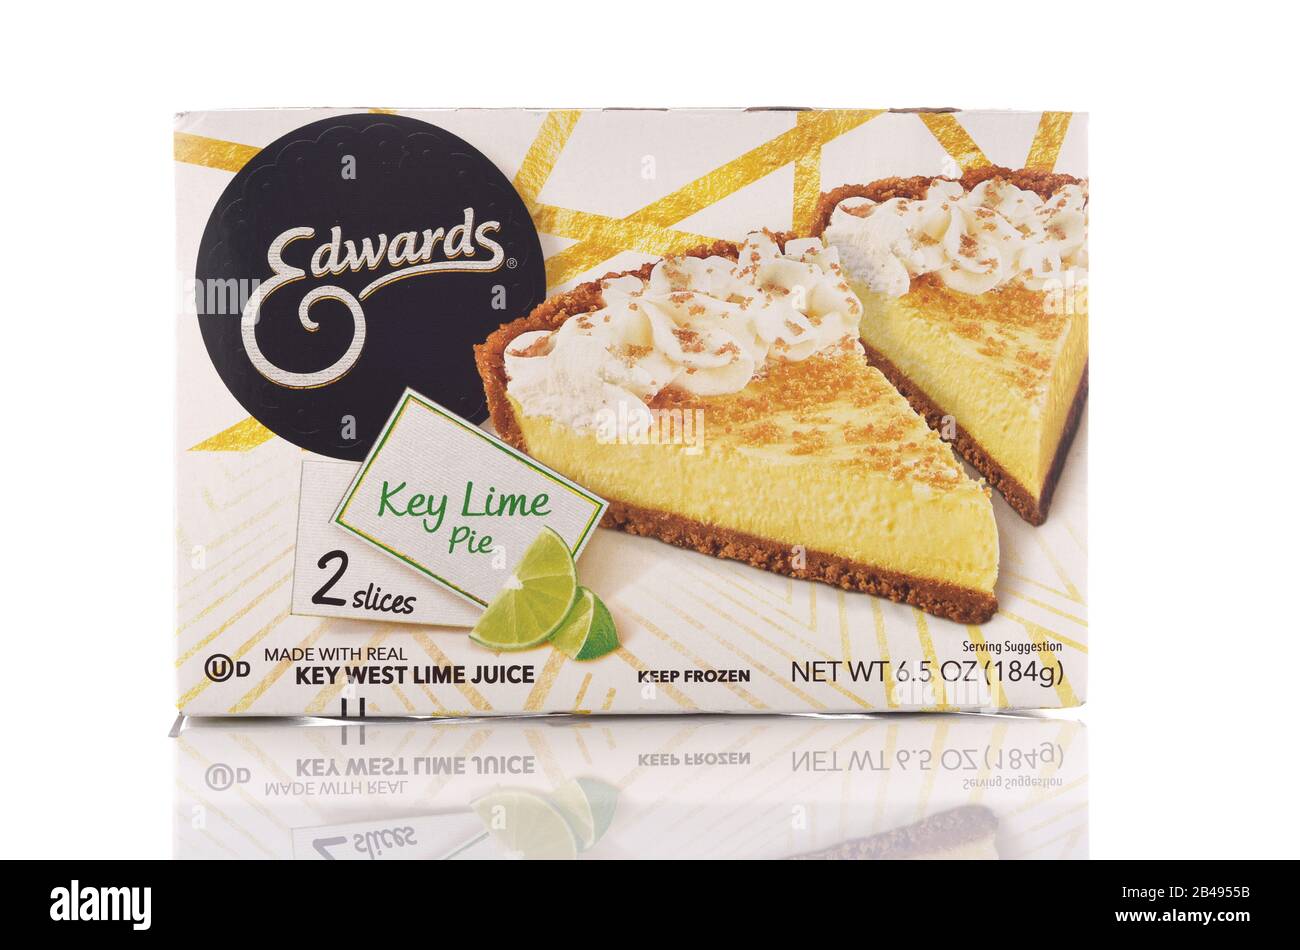 Irvine, KALIFORNIEN - 6. MAI 2019: Eine Schachtel von Edwards Key Lime Pie. Die Schachtel enthält zwei Scheiben der Dessertbehandlung. Stockfoto